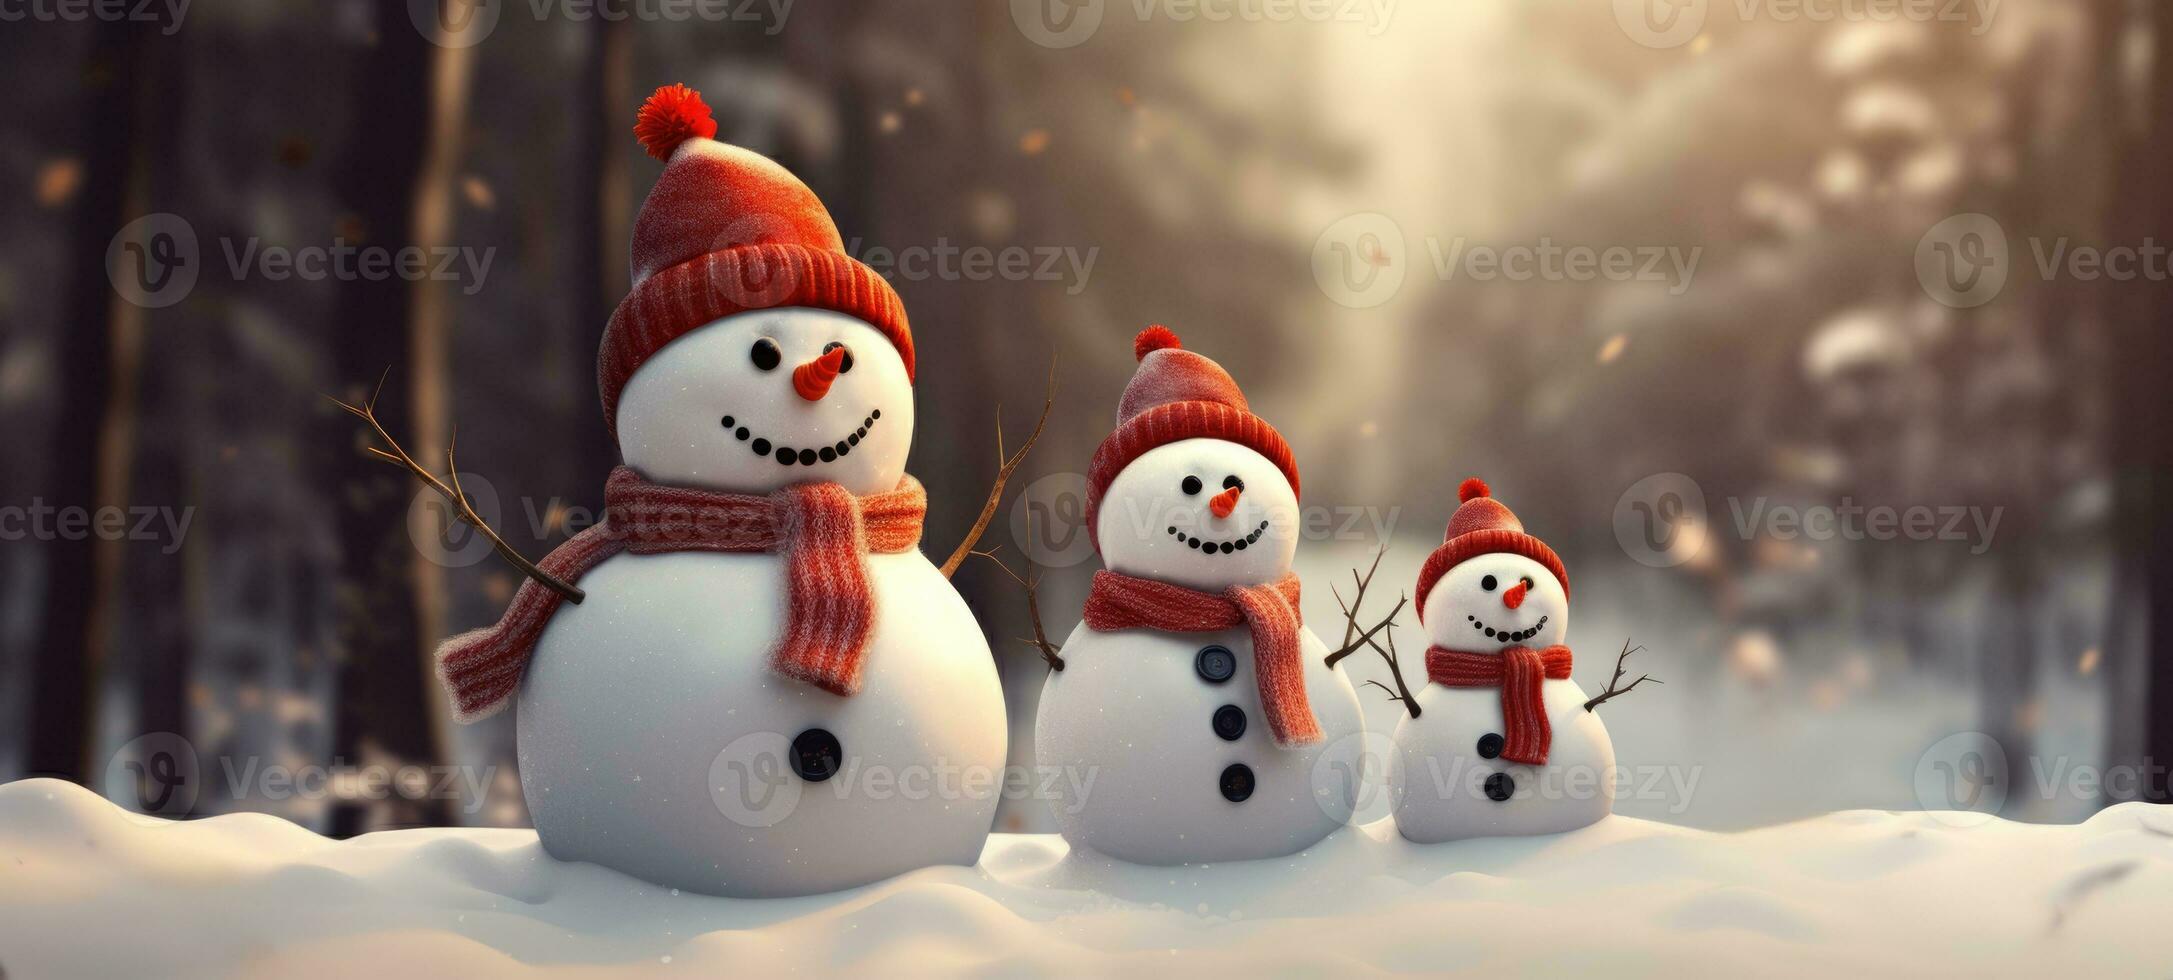 familj snögubbe med scarf i snö skog hälsning kort xmas jul foto